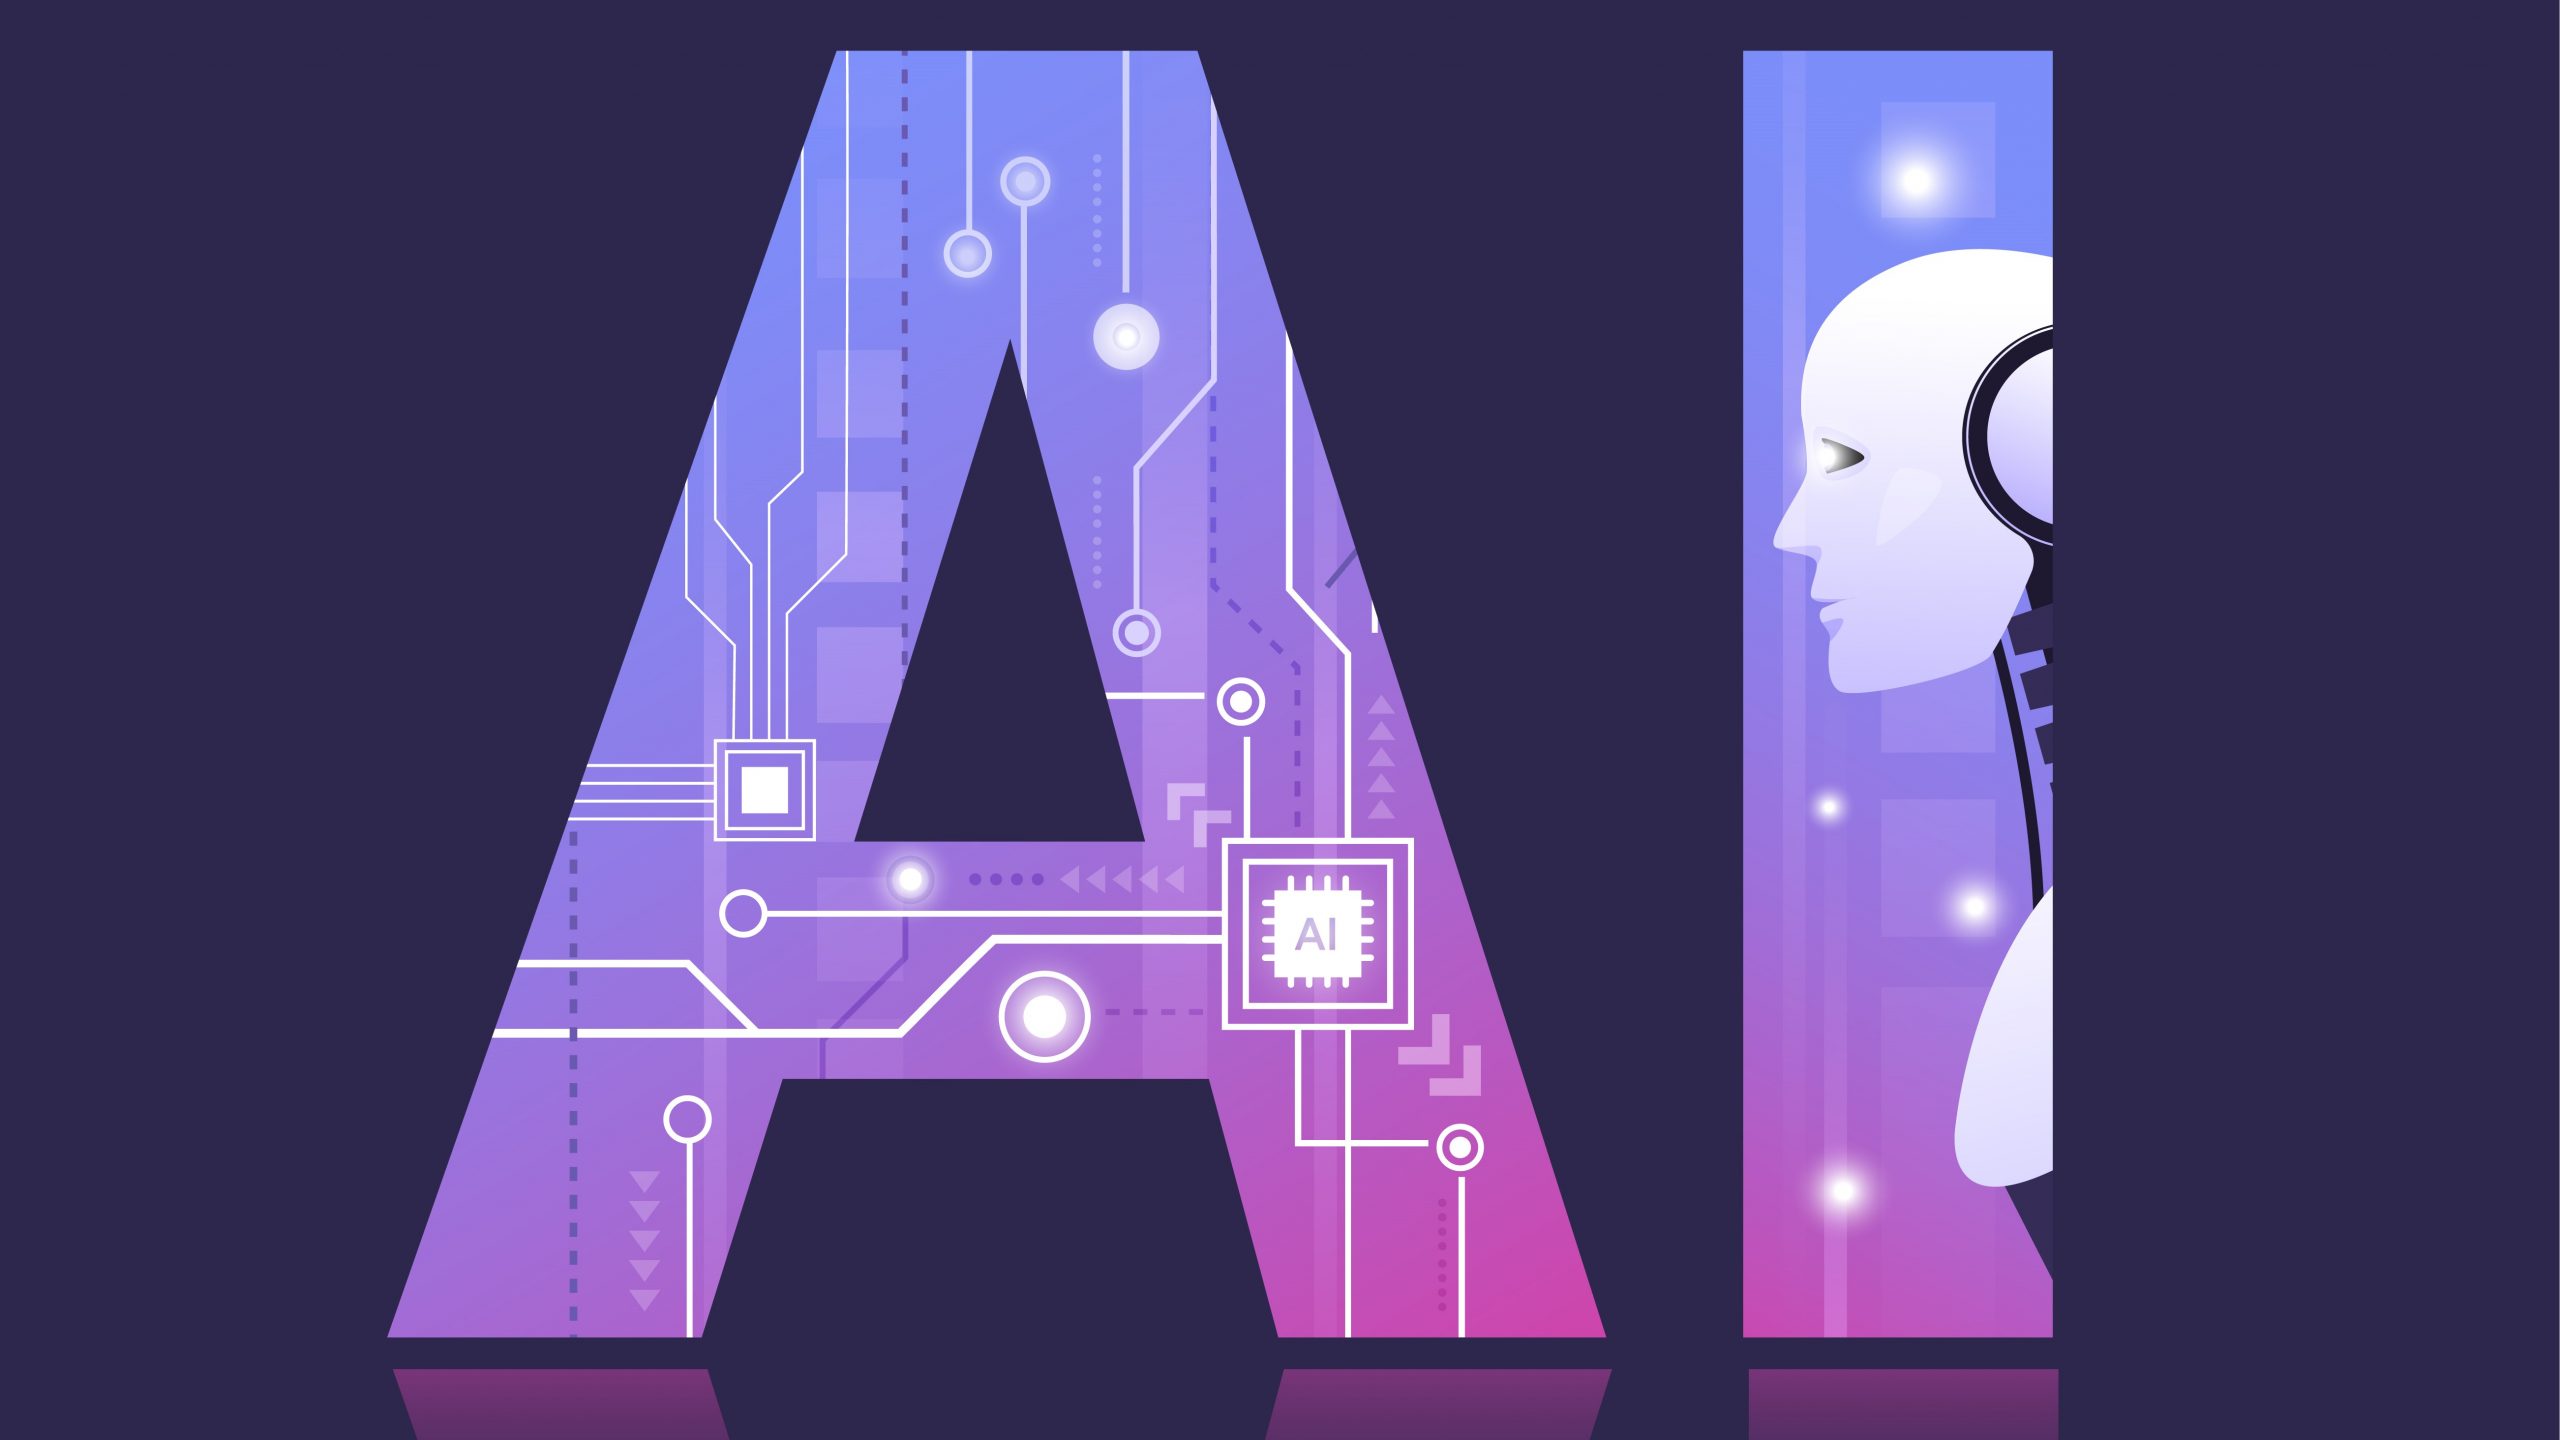 这张图片展示了代表人工智能的字母“AI”，融合了电路图样和人类头像轮廓，颜色以紫色为主，科技感强。